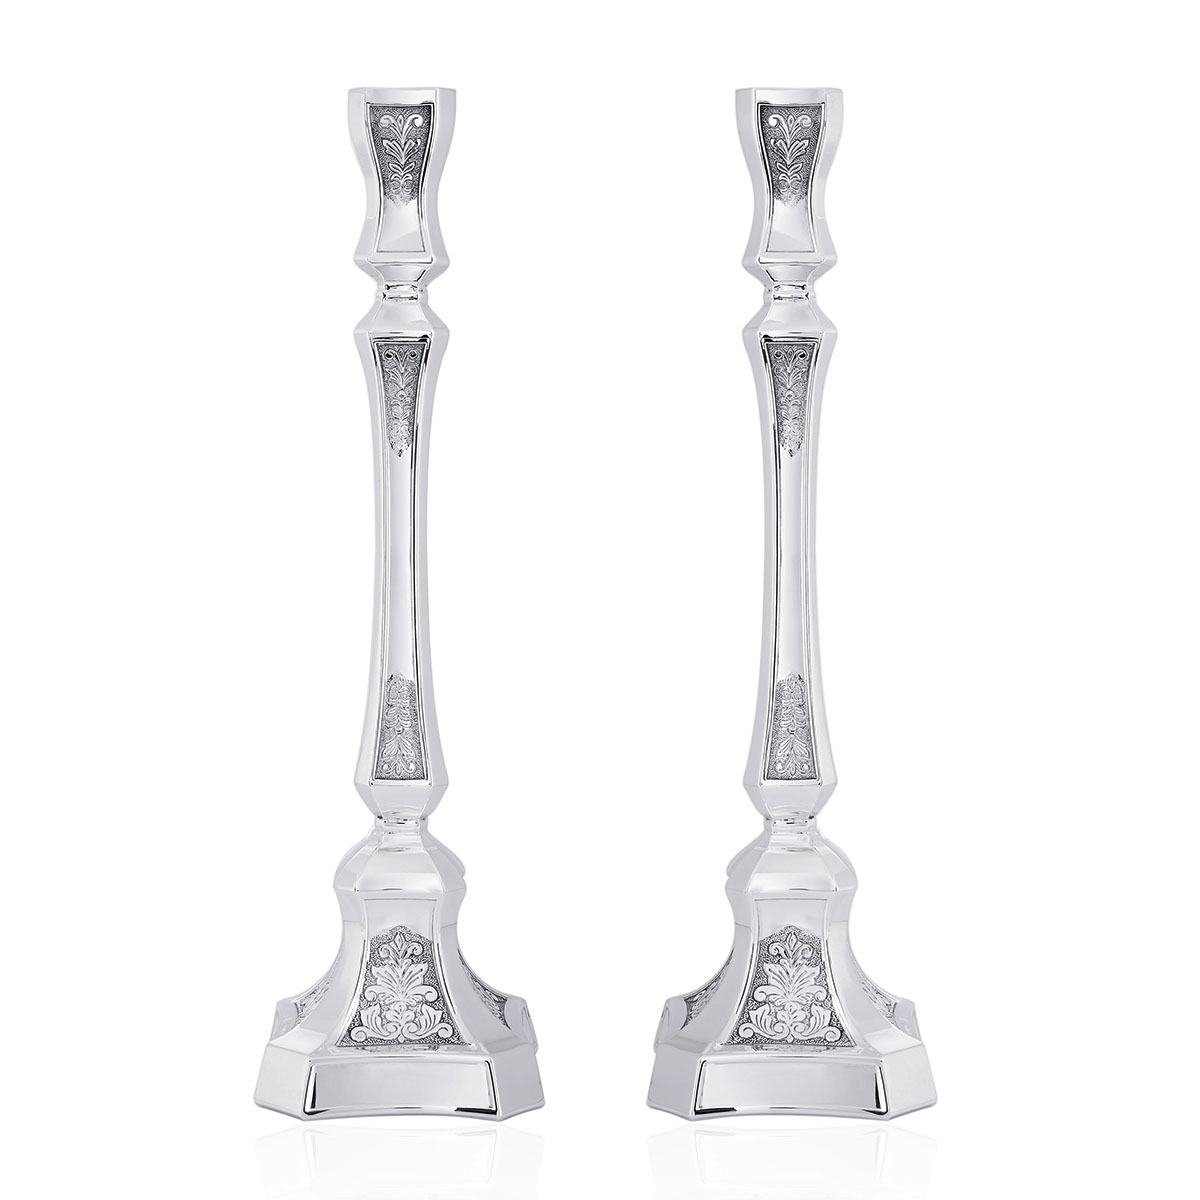 Elegant 925 Sterling Silver Candlesticks With Ornate Design - 1